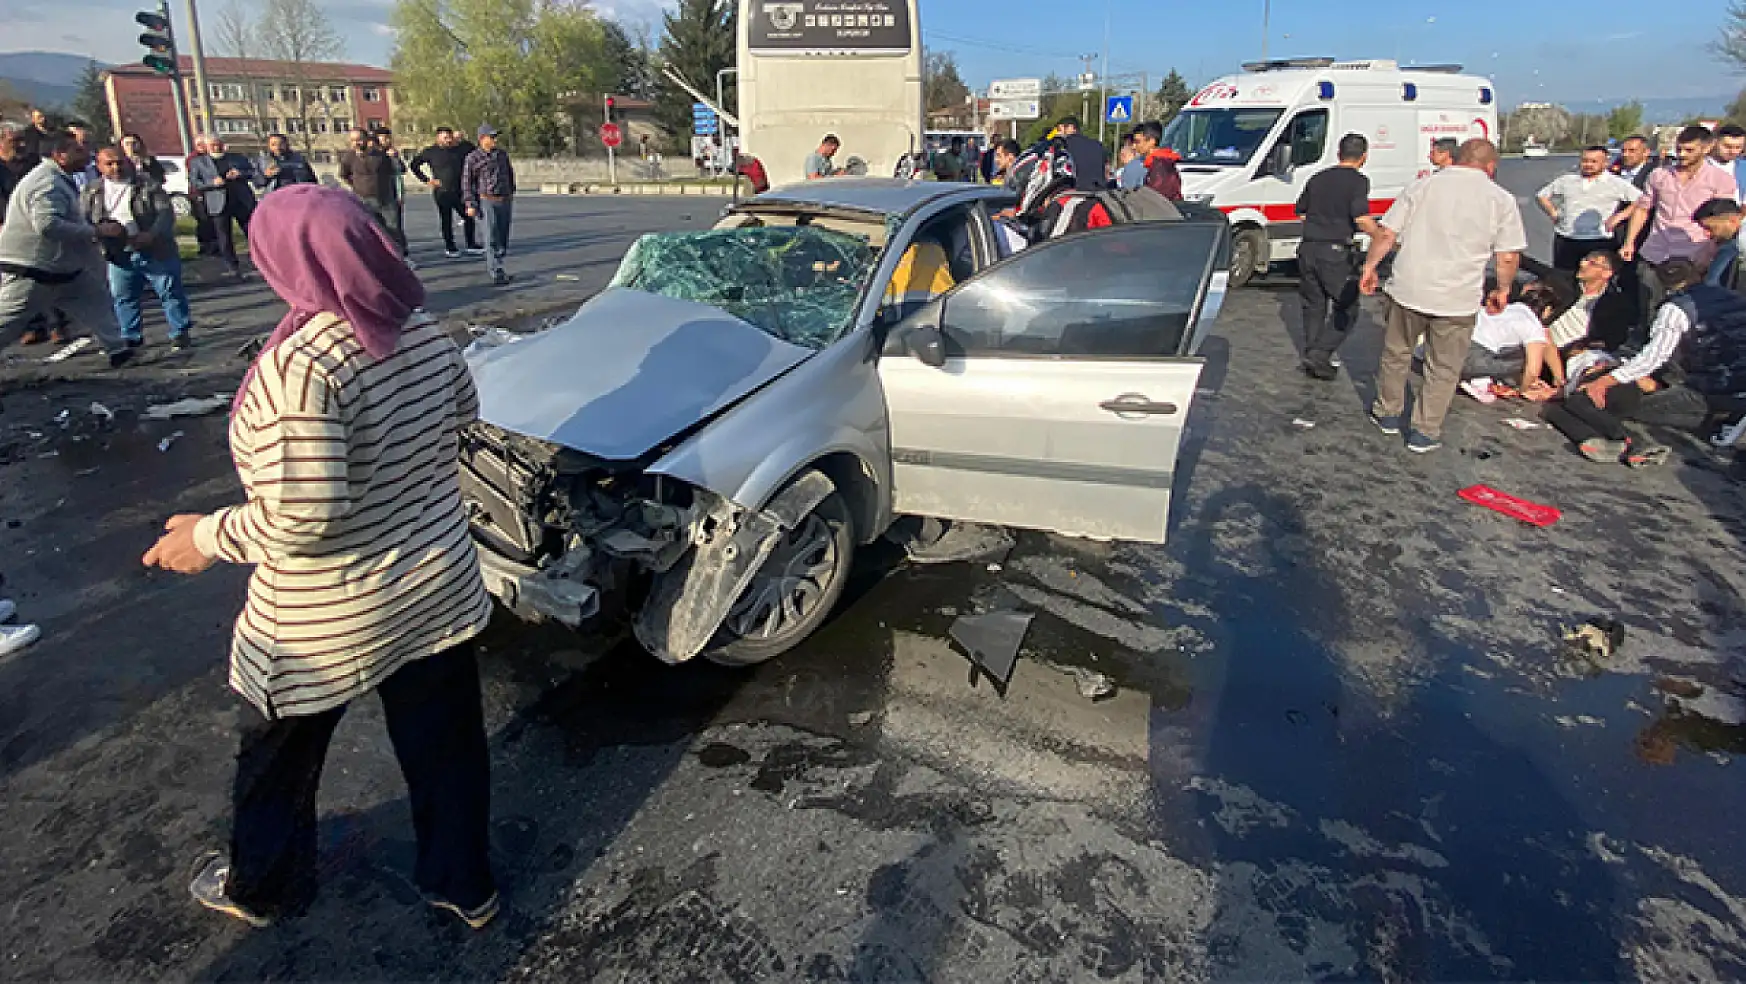 Yolcu Otobüsüne Çarpan Otomobil Kağıt Gibi Ezildi 2 Kişi Hayatını Kaybetti, 1 Kişi Yaralandı